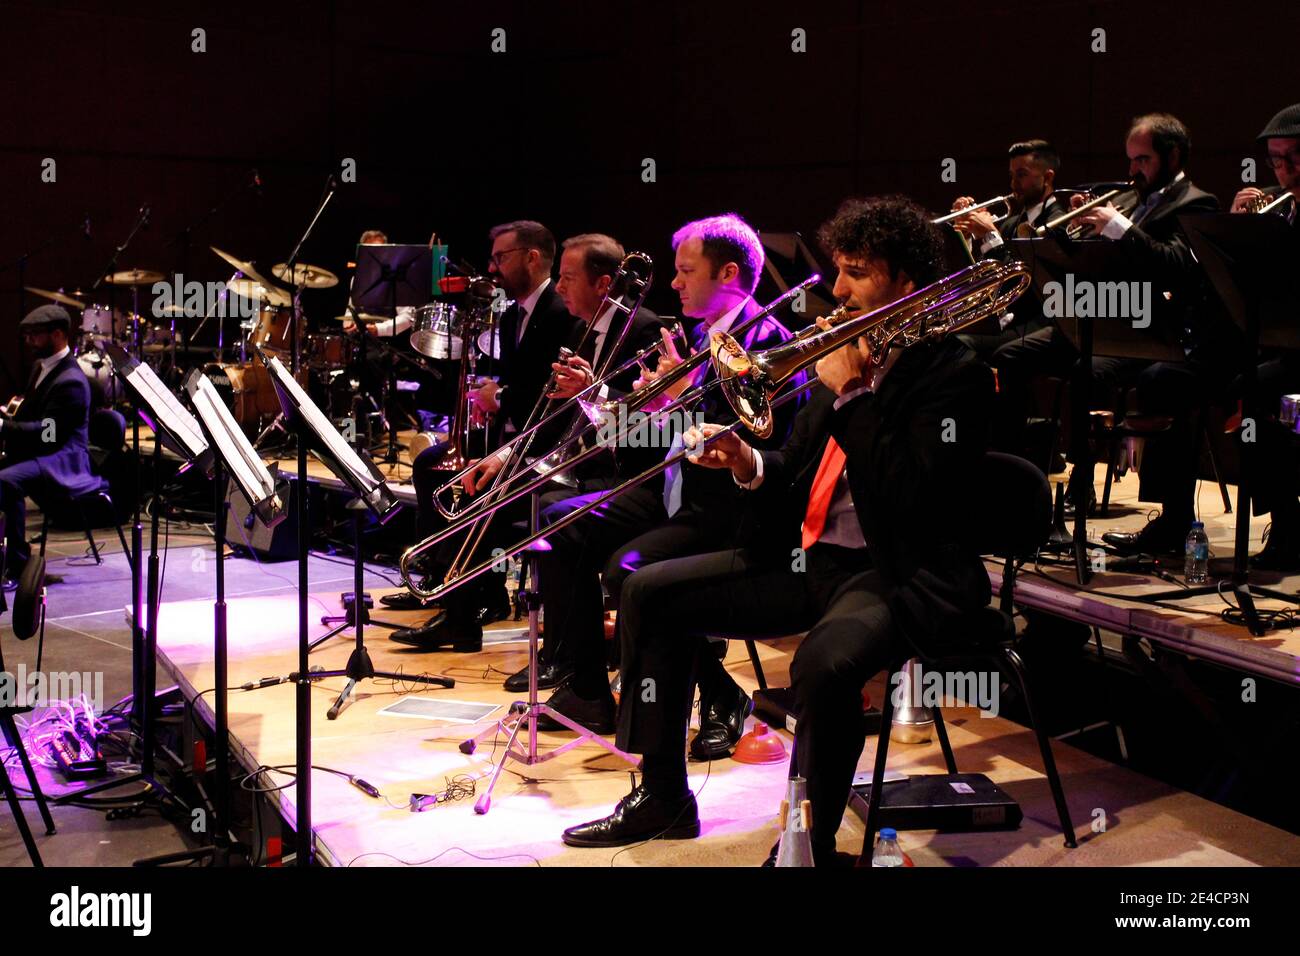 Coruna-Spagna. I trombettisti suonano durante un concerto jazz il 18 agosto 2019 Foto Stock